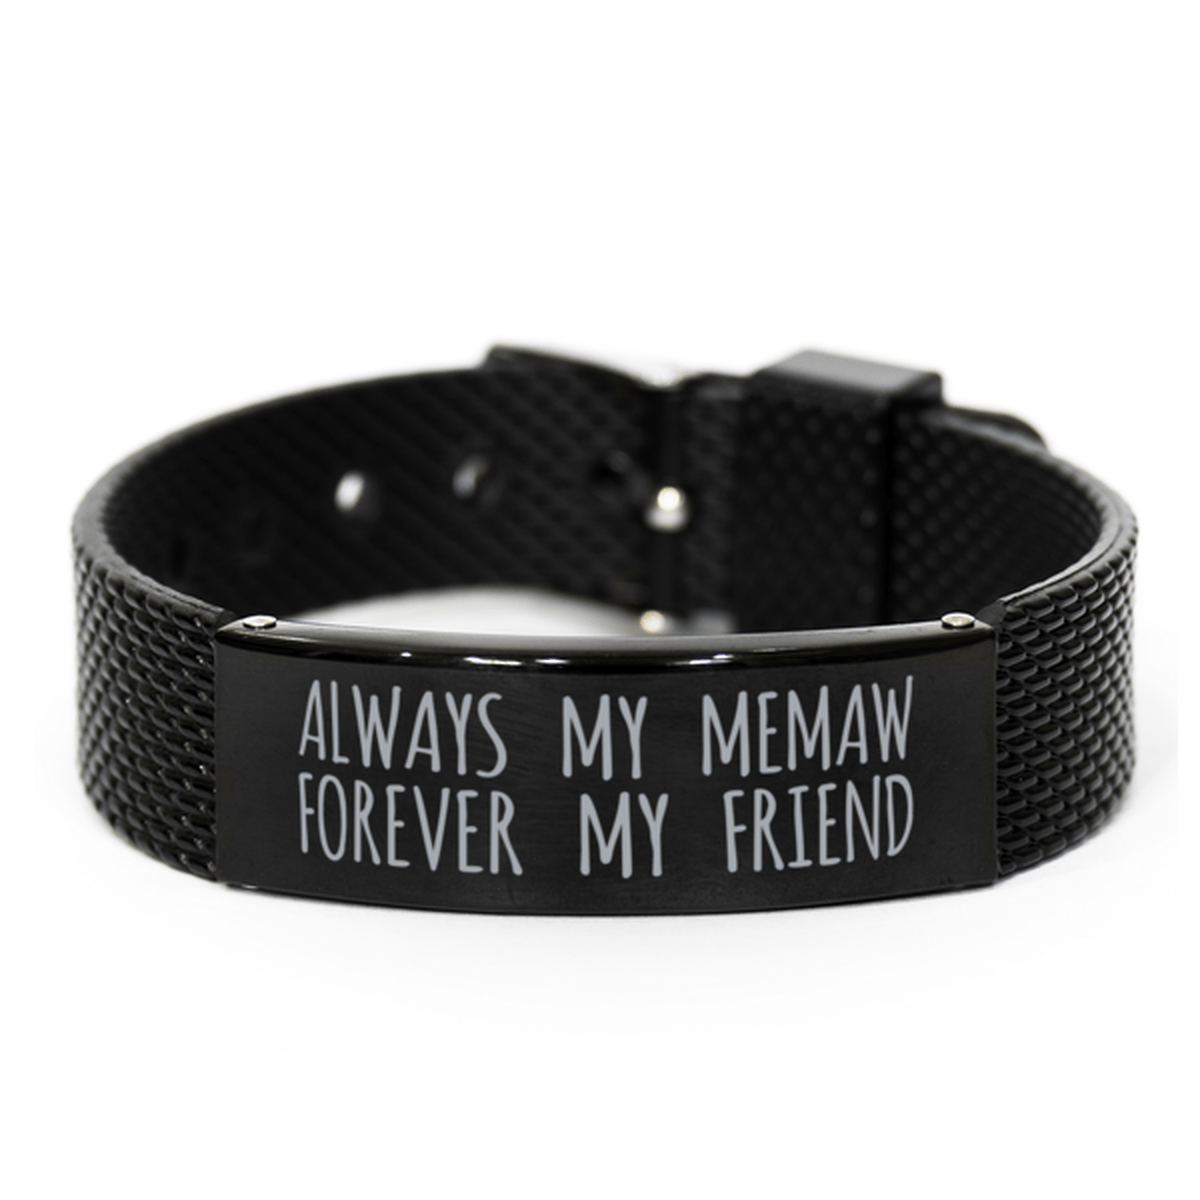 Inspirational Memaw Black Shark Mesh Bracelet, Always My Memaw Forever My Friend, Best Birthday Gifts for Family Friends